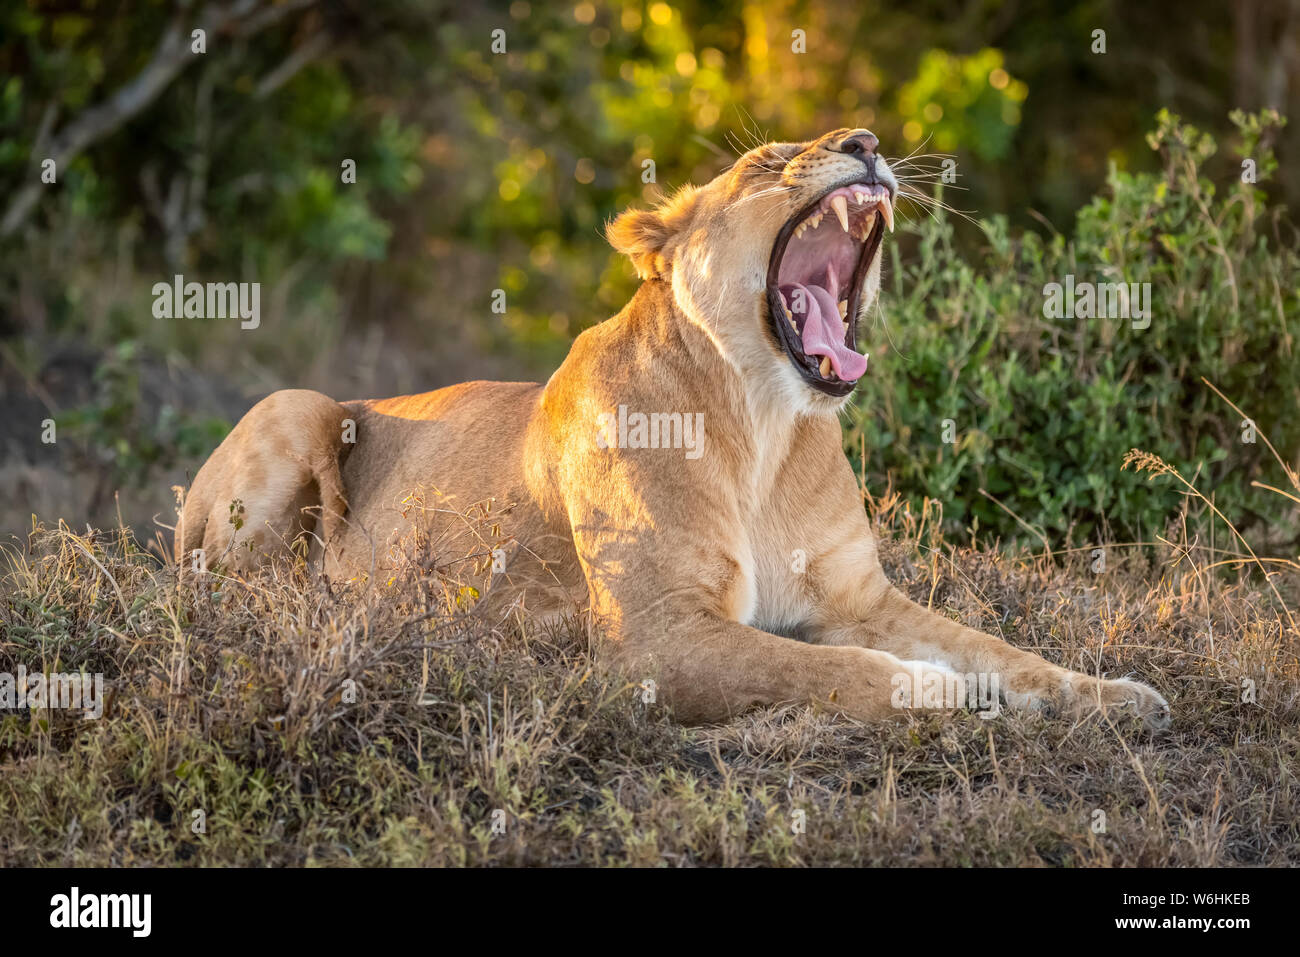 Lioness (Panthera leo) réside dans l'ensoleillement pommelé de bâiller largement, Serengeti, Tanzanie Banque D'Images